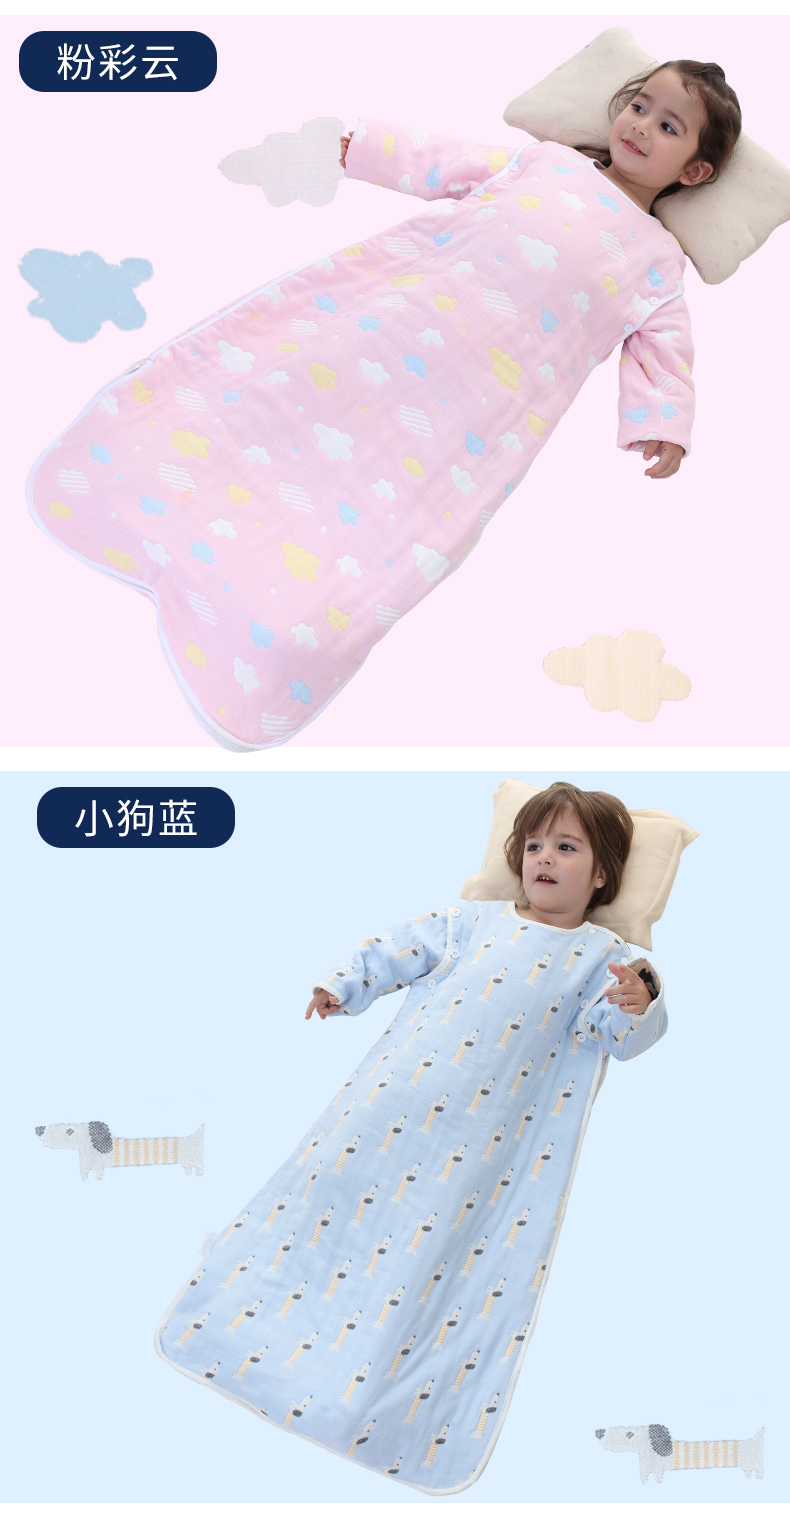 核心参数品牌:煦怡(xuyi) 类别:睡袋 款式:双向拉链式 产地:中国浙江